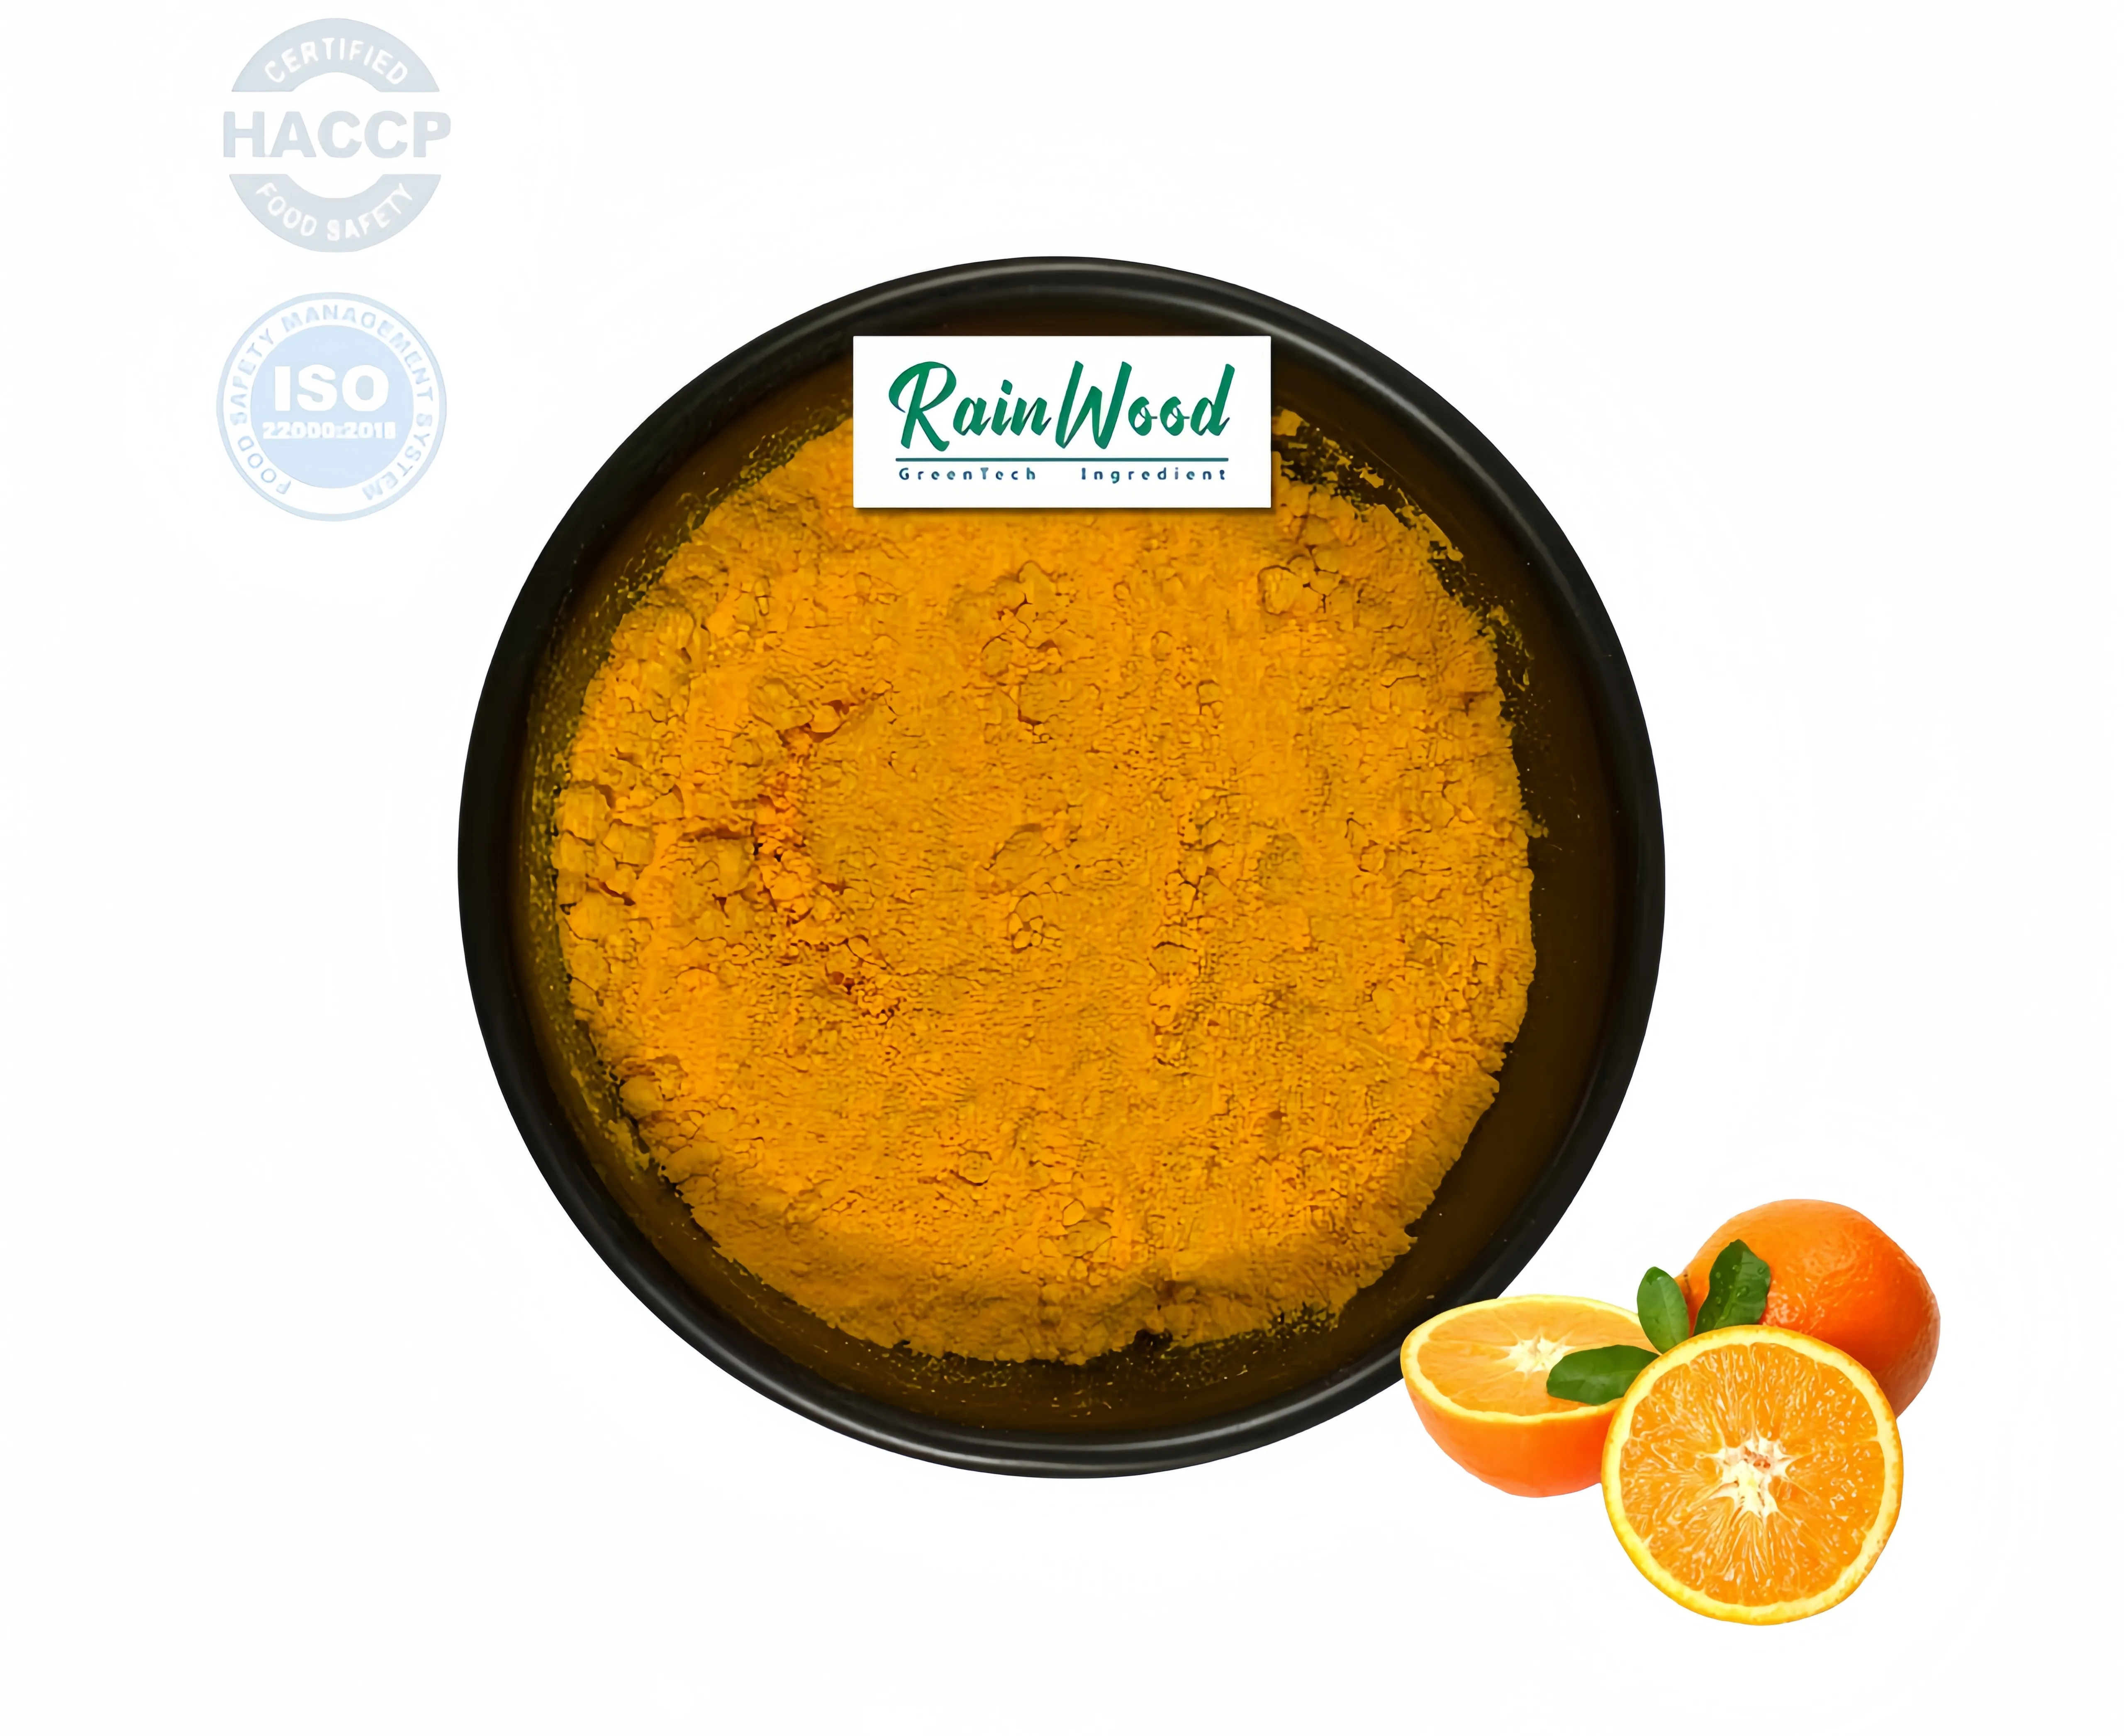 Legno piovano solubile in acqua puro organico succo d'arancia in polvere arancione